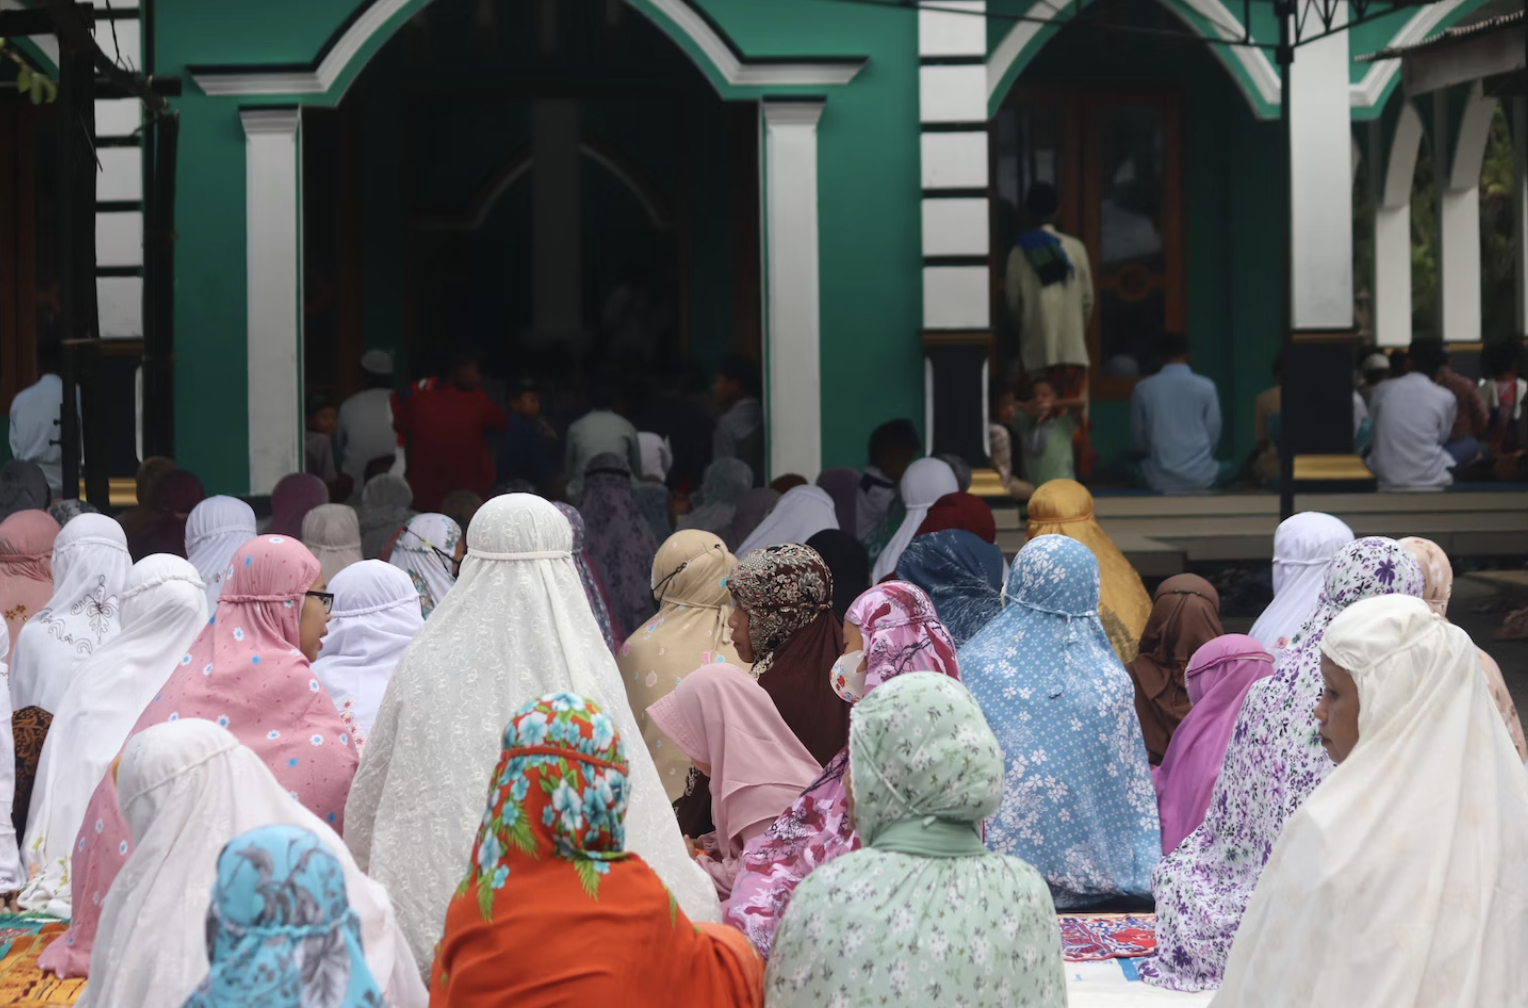 В Курбан-байрам мусульмане желают друг другу благословенного праздника: "Ид мубарак!" Фото © Mufid Majnun / Unsplash